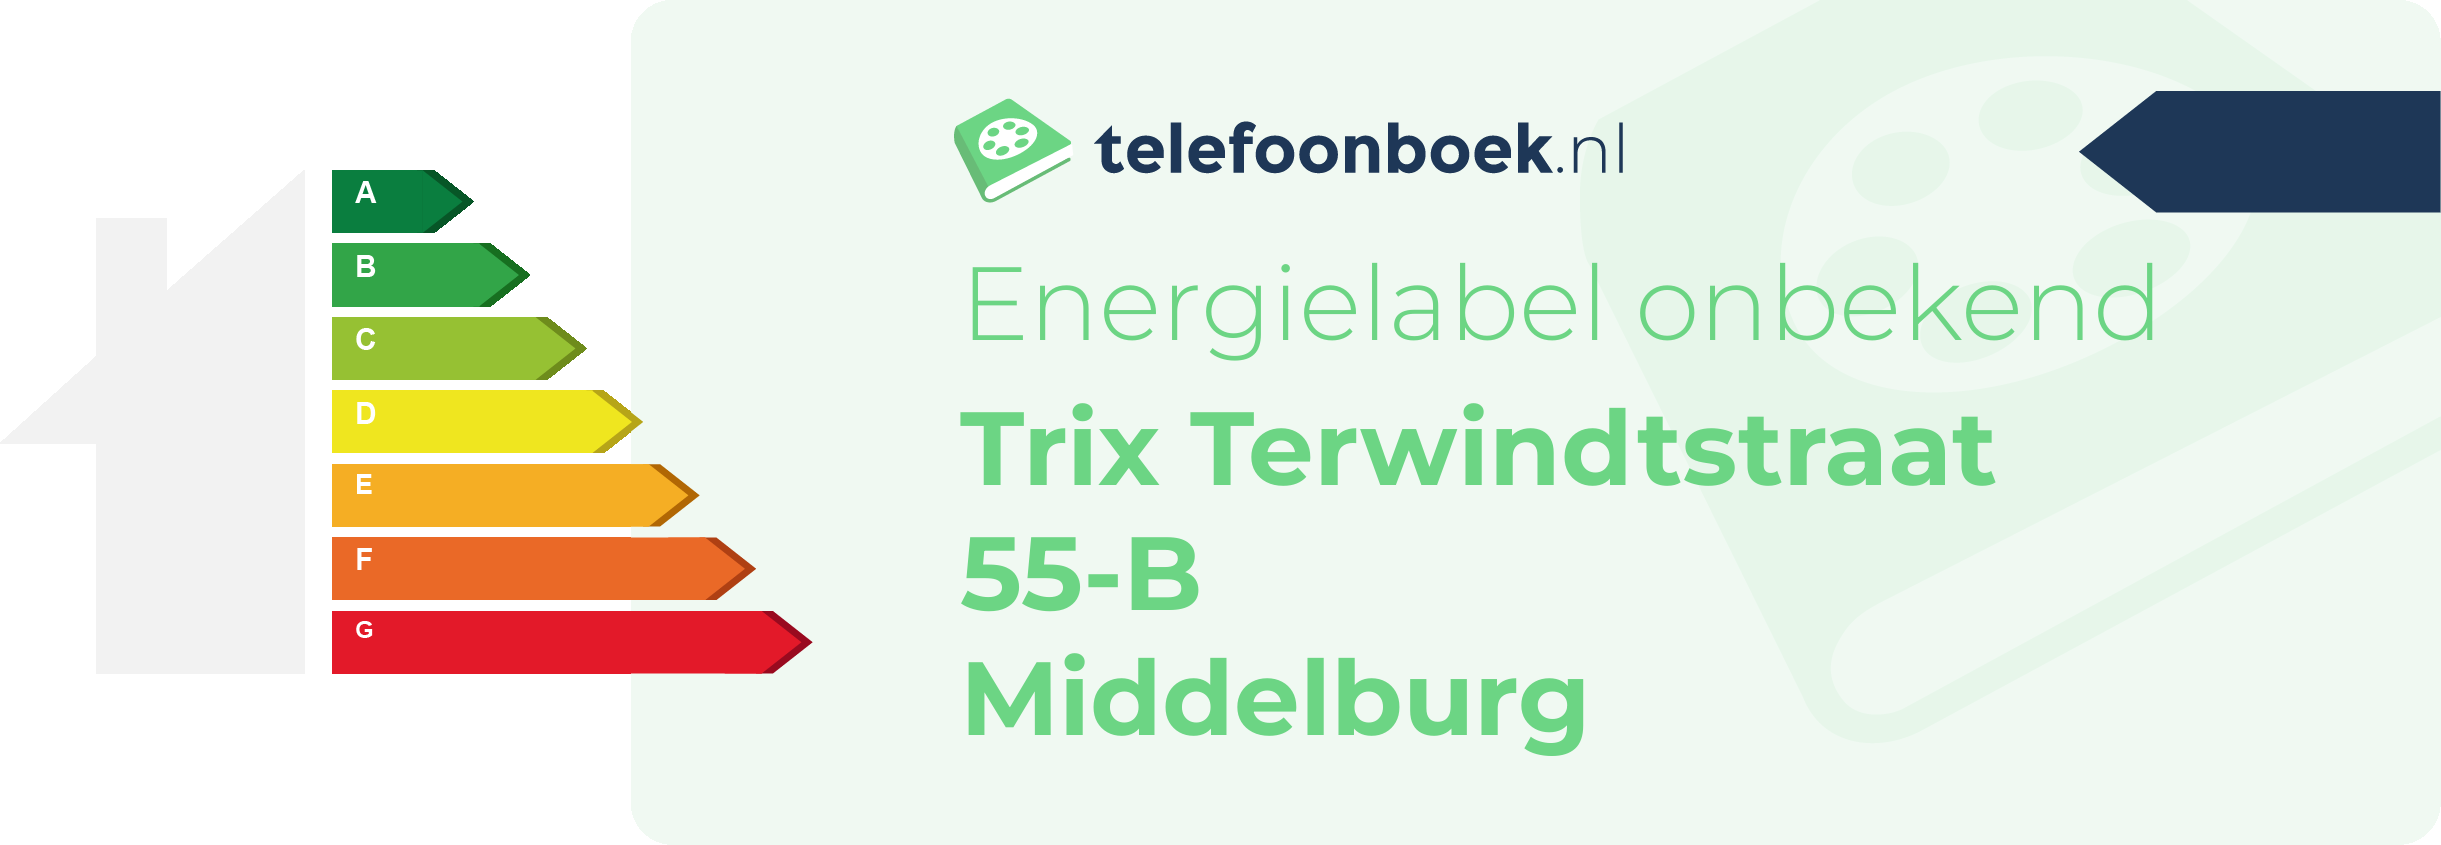 Energielabel Trix Terwindtstraat 55-B Middelburg